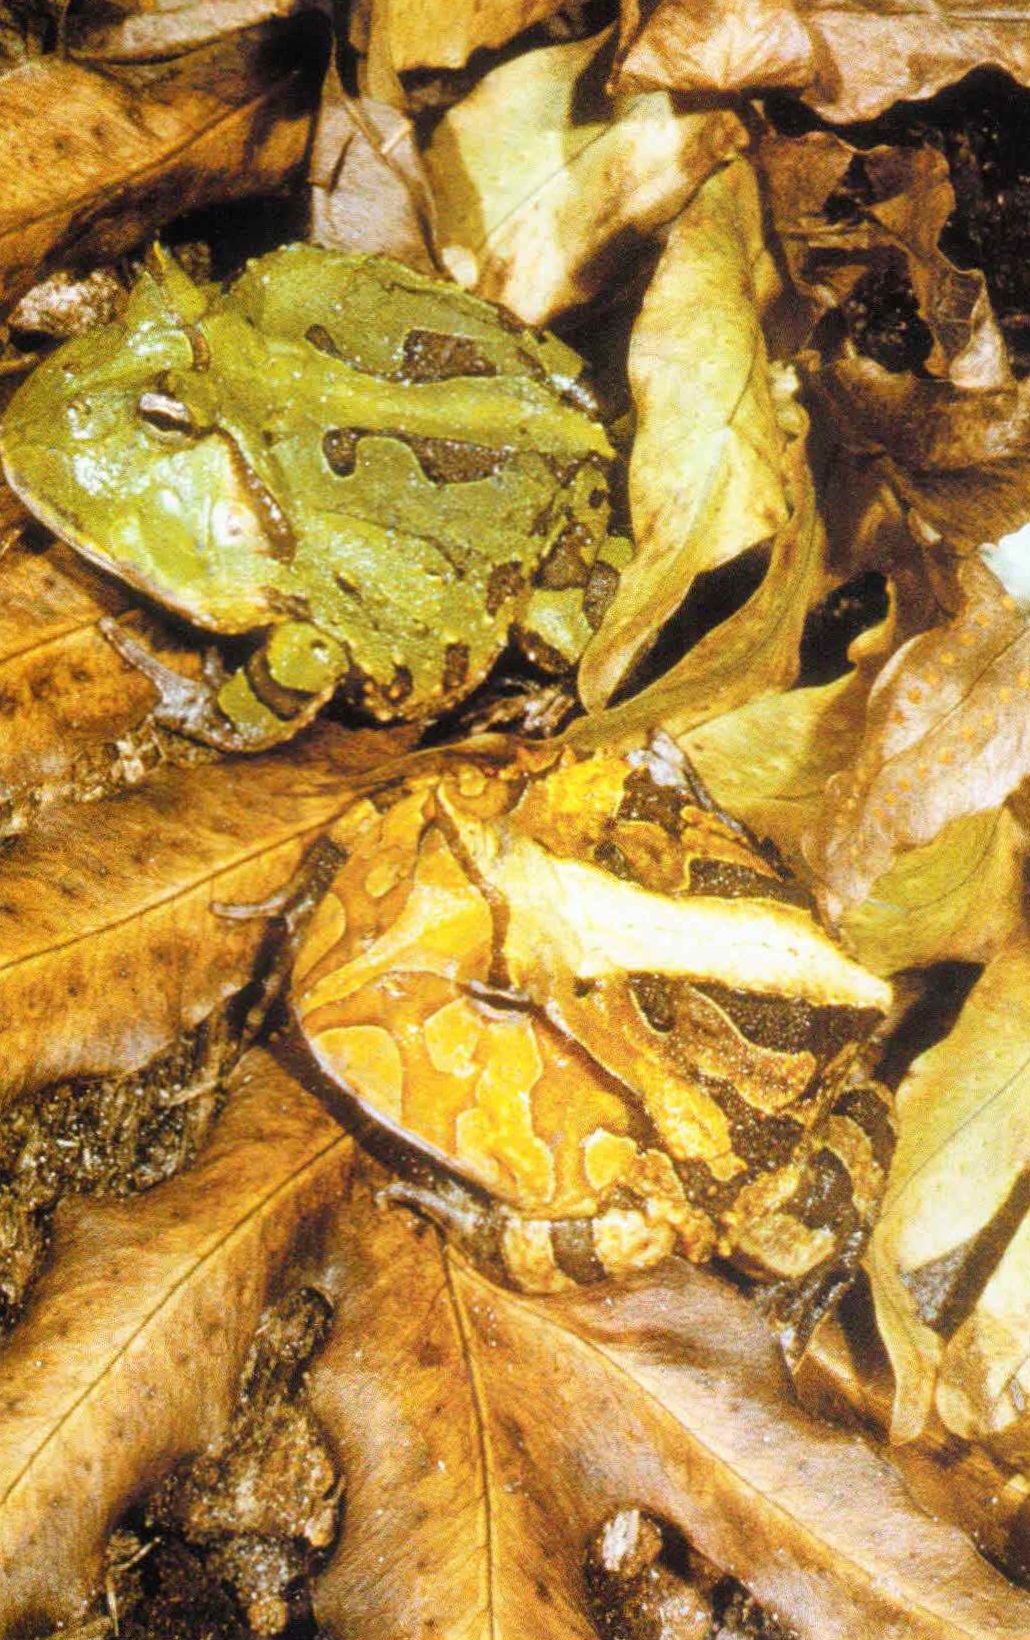 Амазонские рогатки живут во влажной листовой подстилке дождевых лесов.